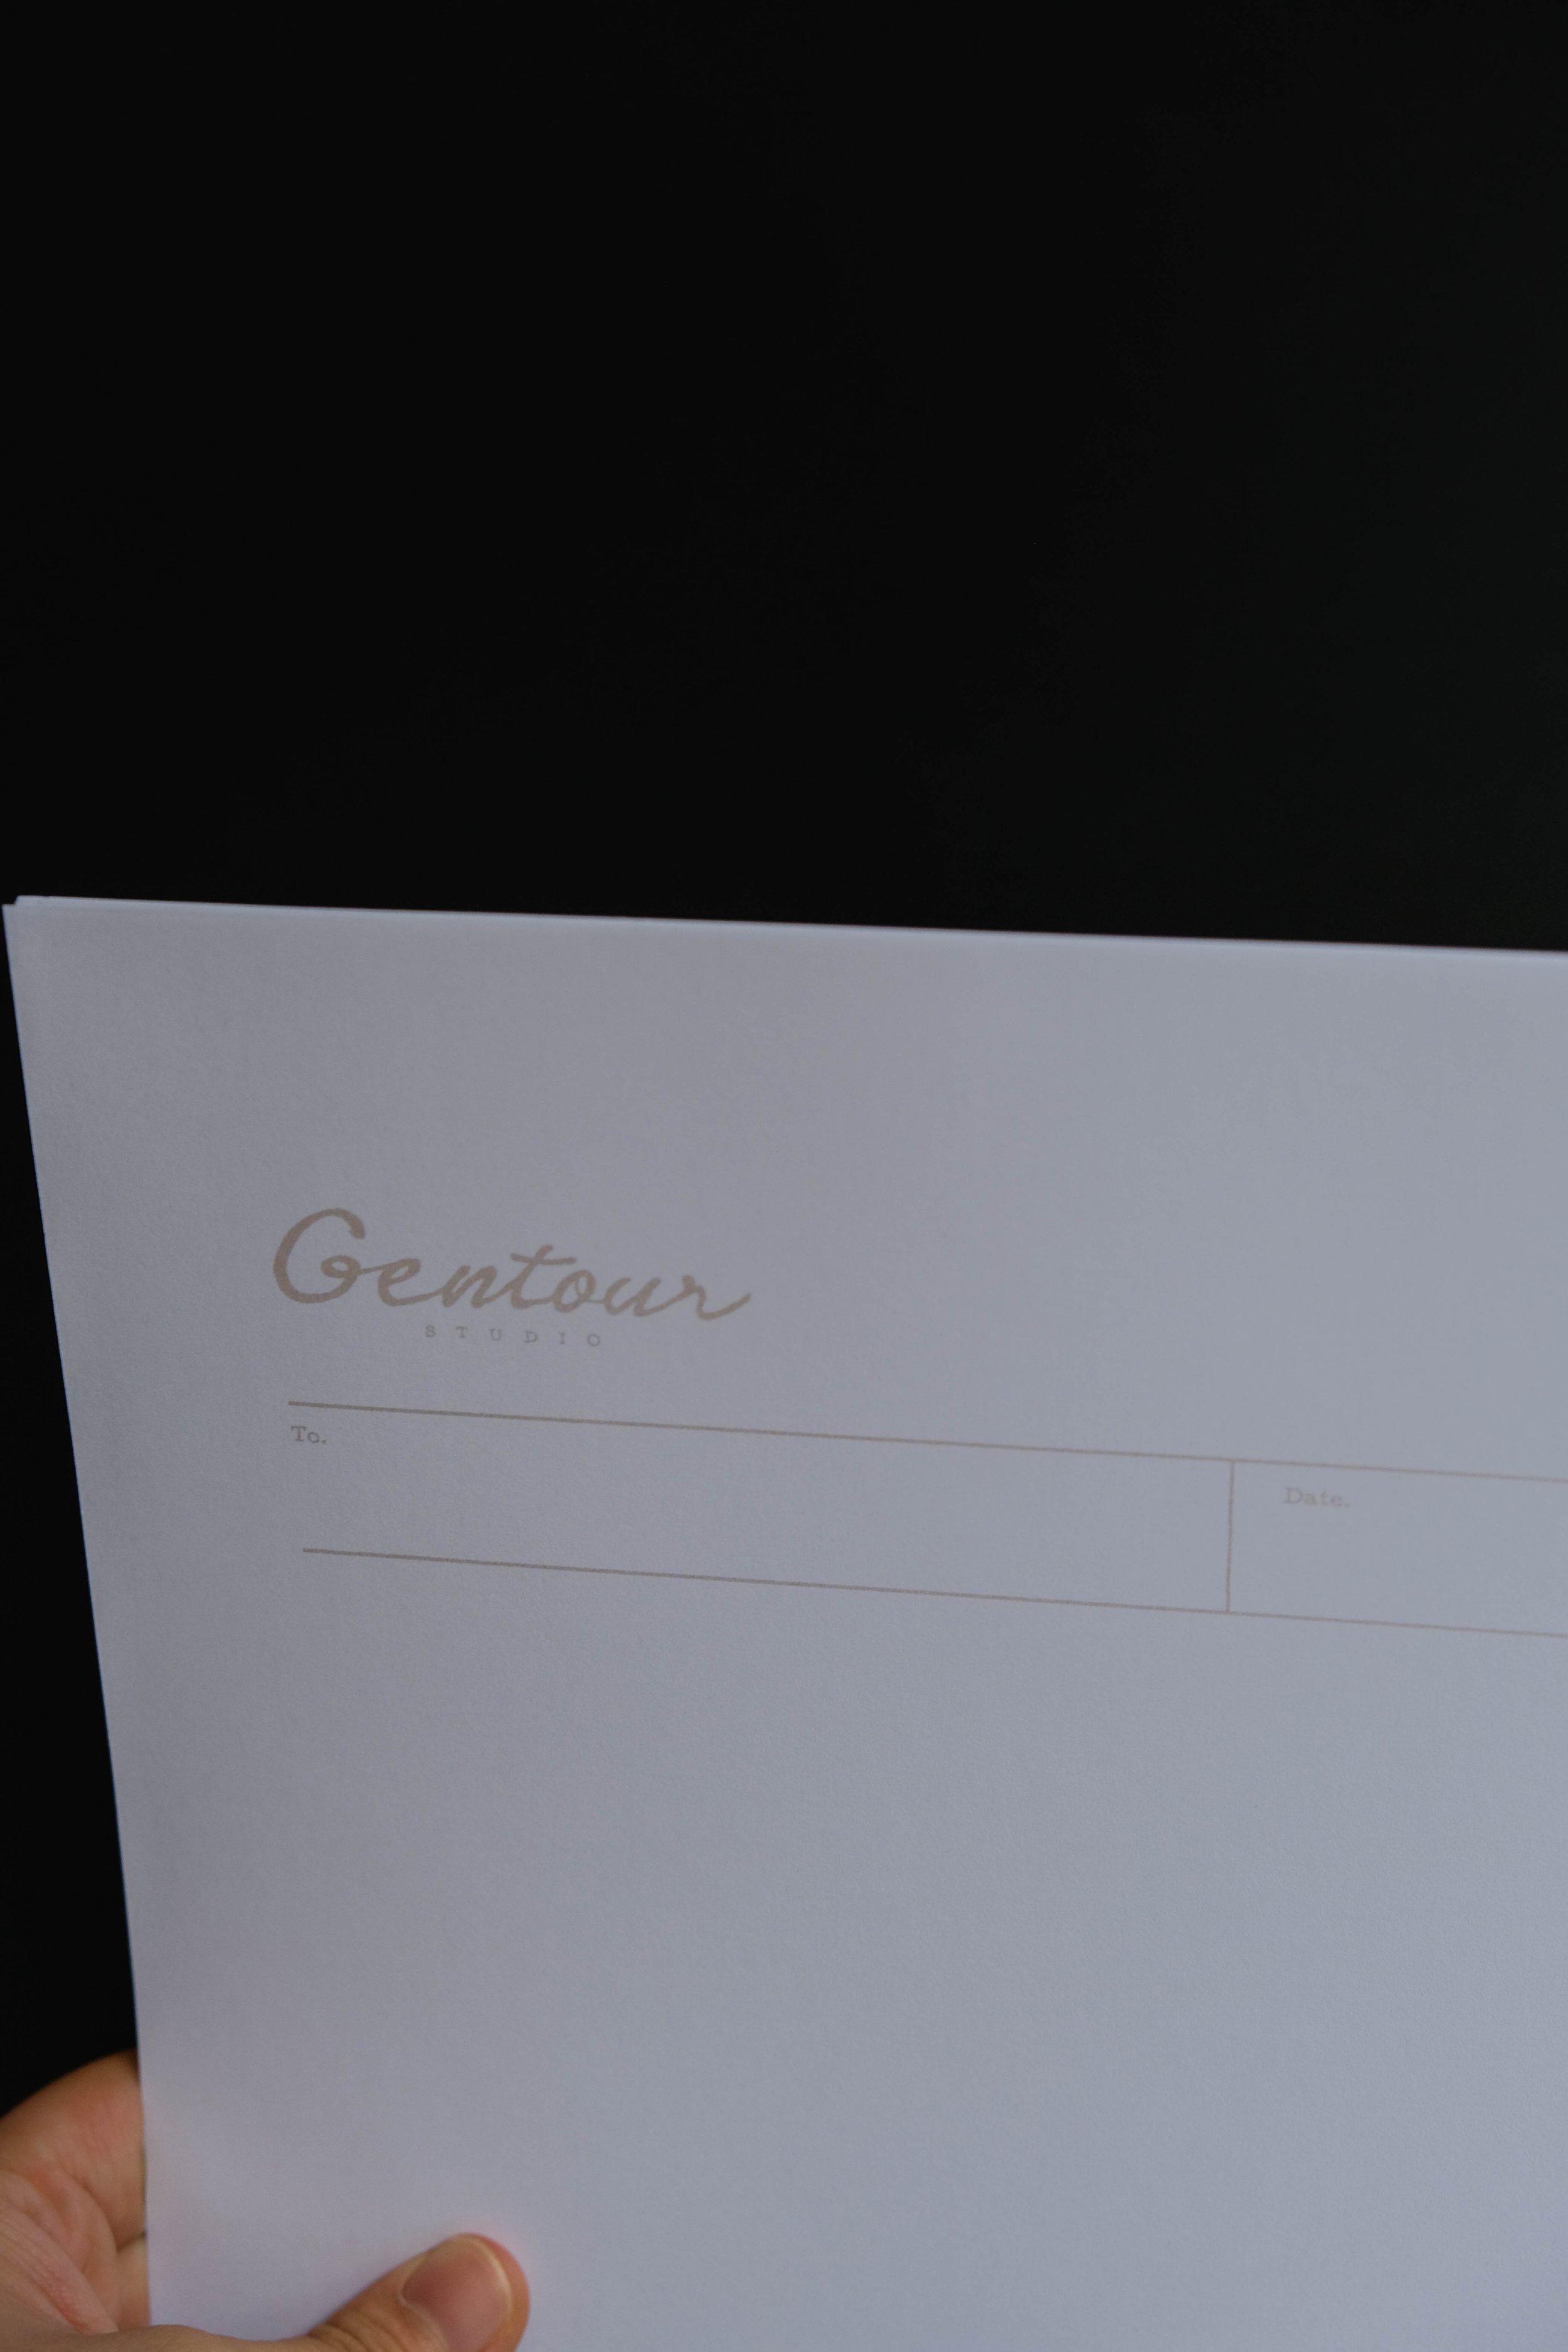 Gentour信紙設計